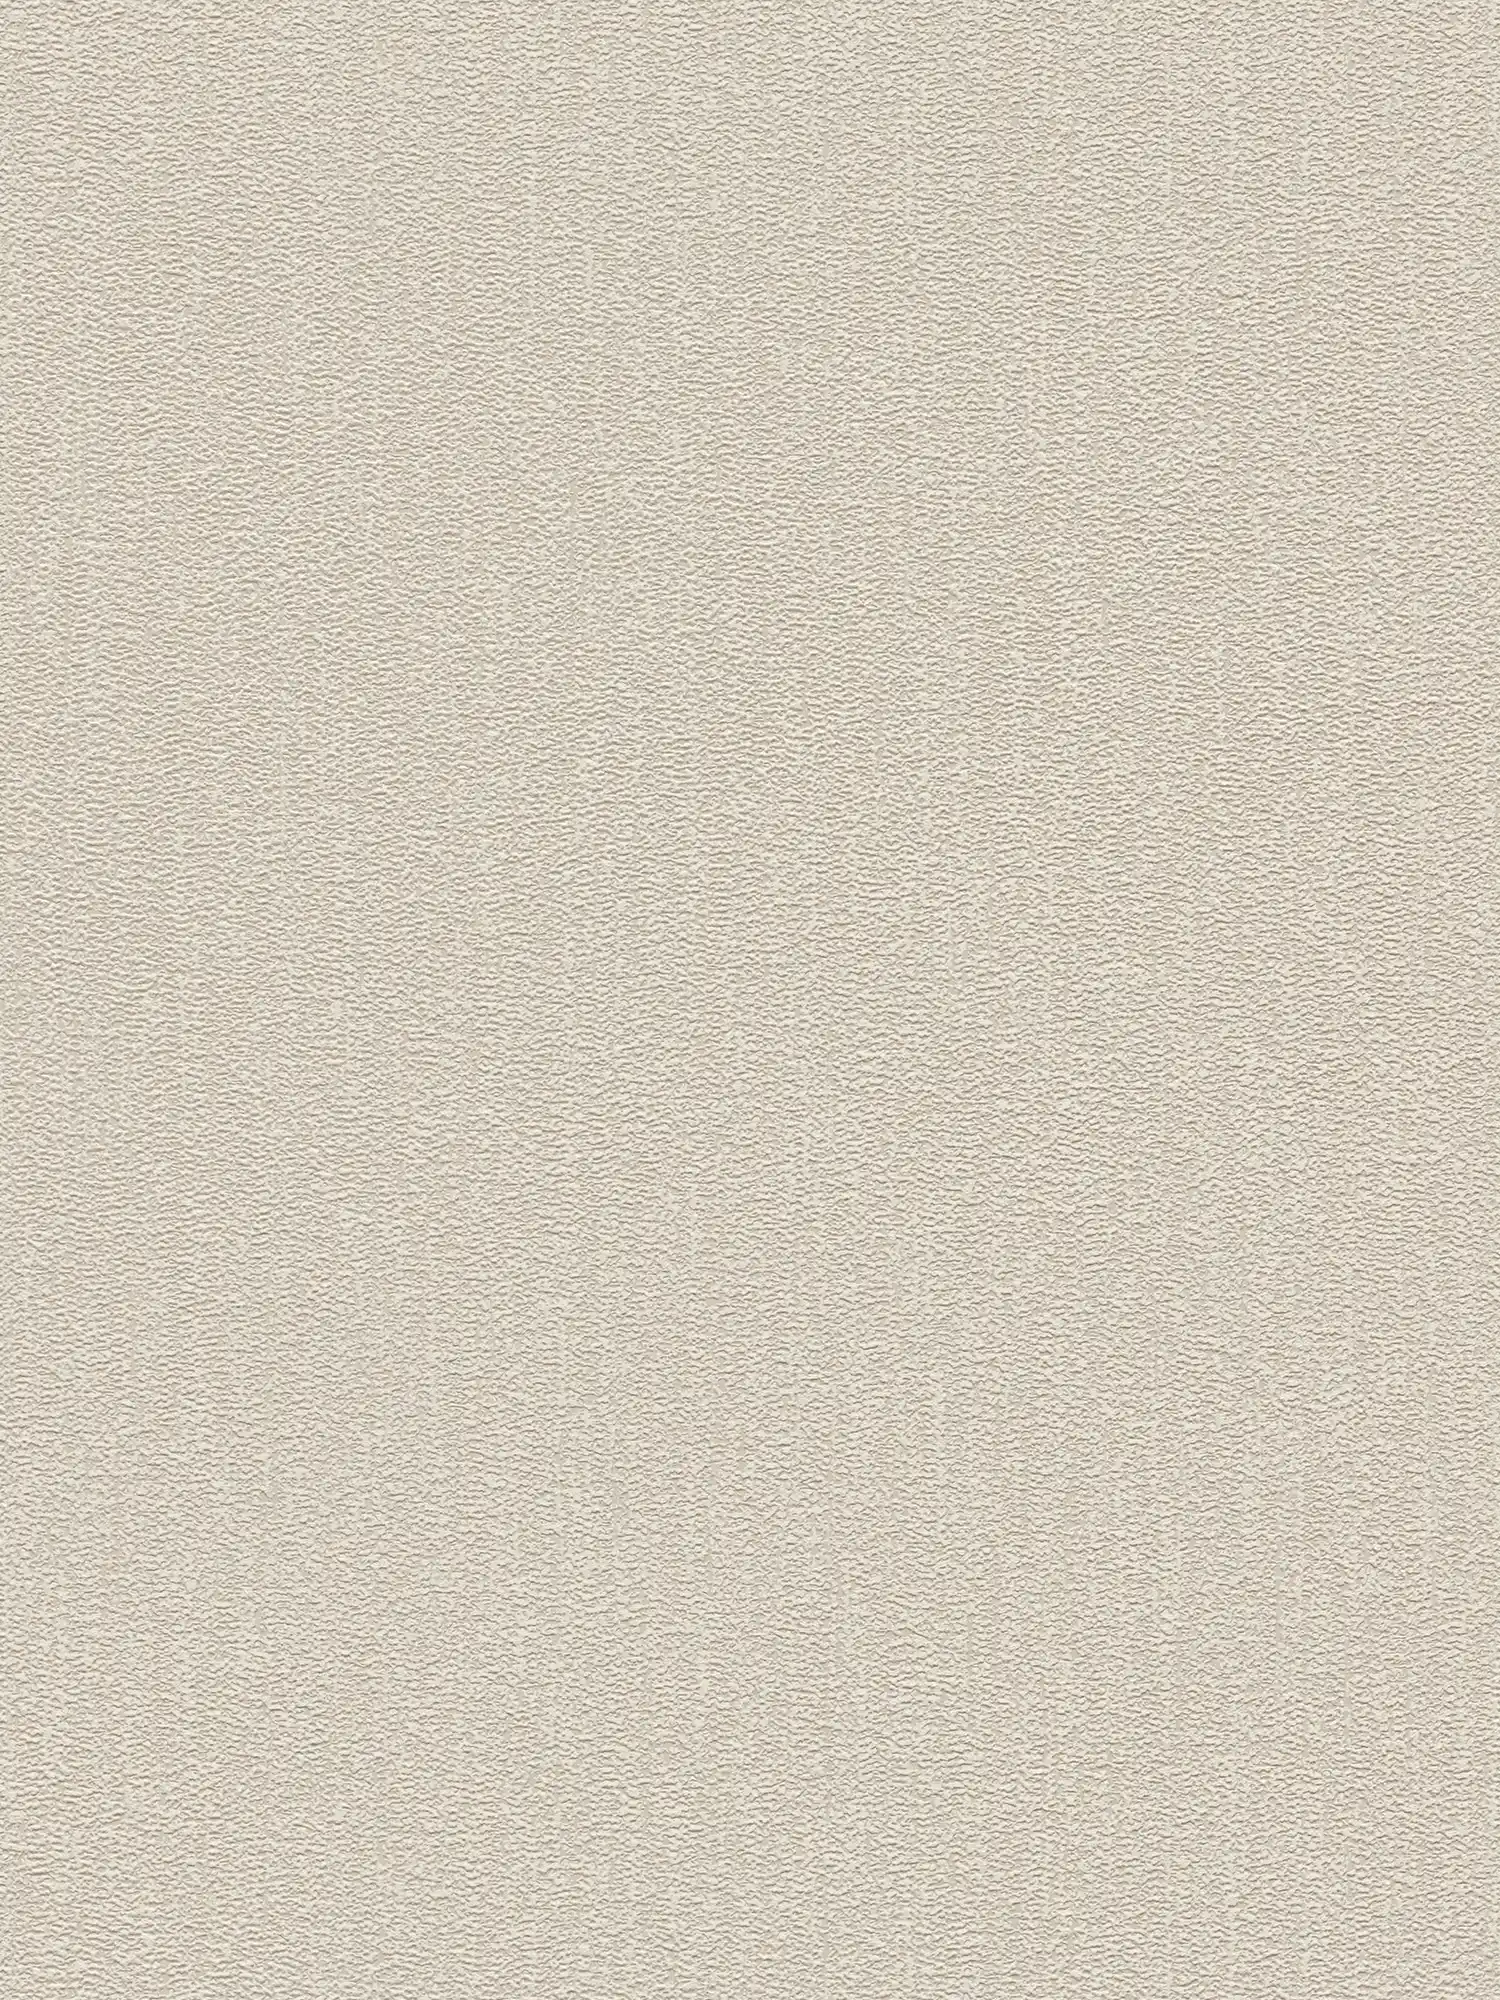 Papier peint uni texturé légèrement brillant - beige, gris, argenté
